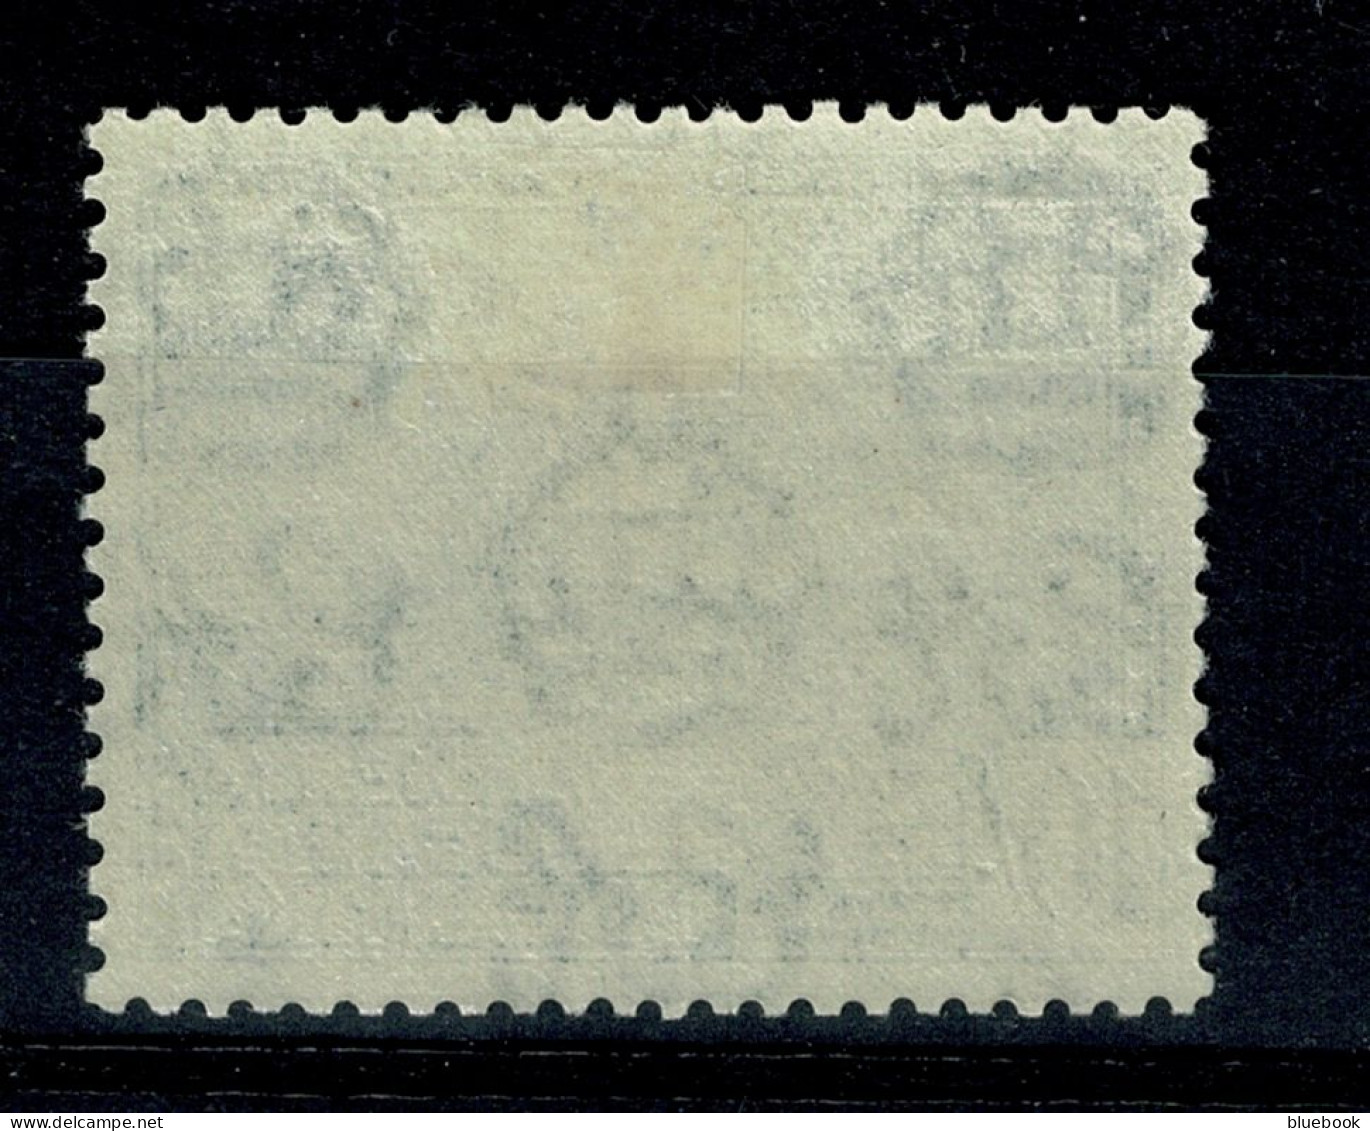 Ref 1640 - KUT Kenya Uganda & Tanganyka 1954 - 10/= Stamp - Royal Lodge - Lightly Mounted Mint SG 179 - Kenya, Ouganda & Tanganyika